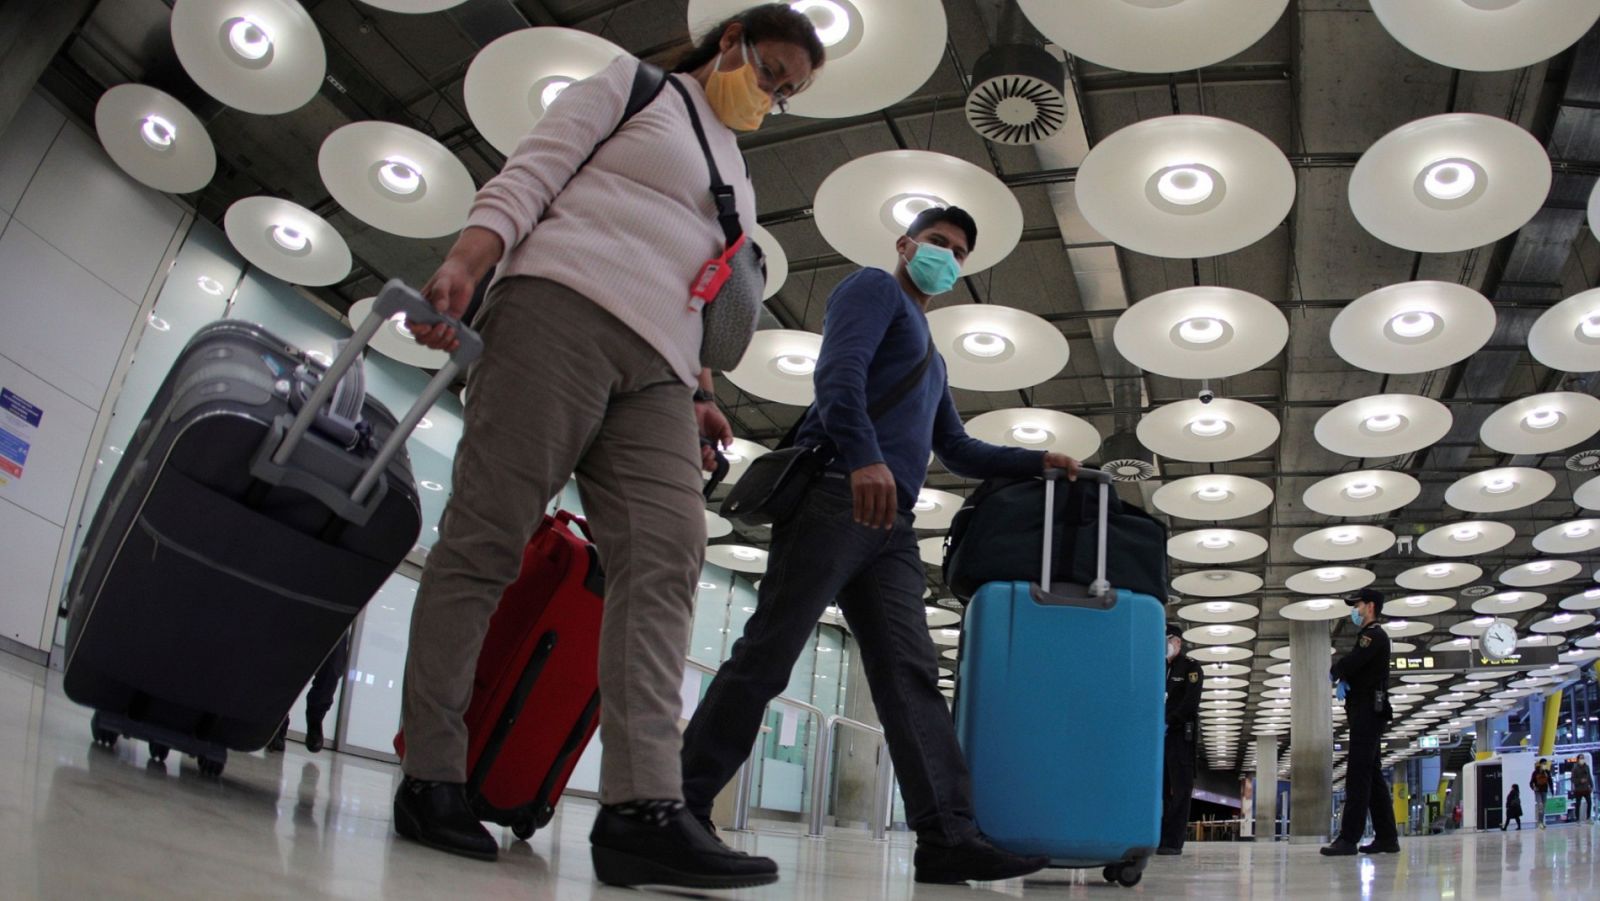 España establece una cuarentena obligatoria de 14 días para viajeros procedentes del extranjero